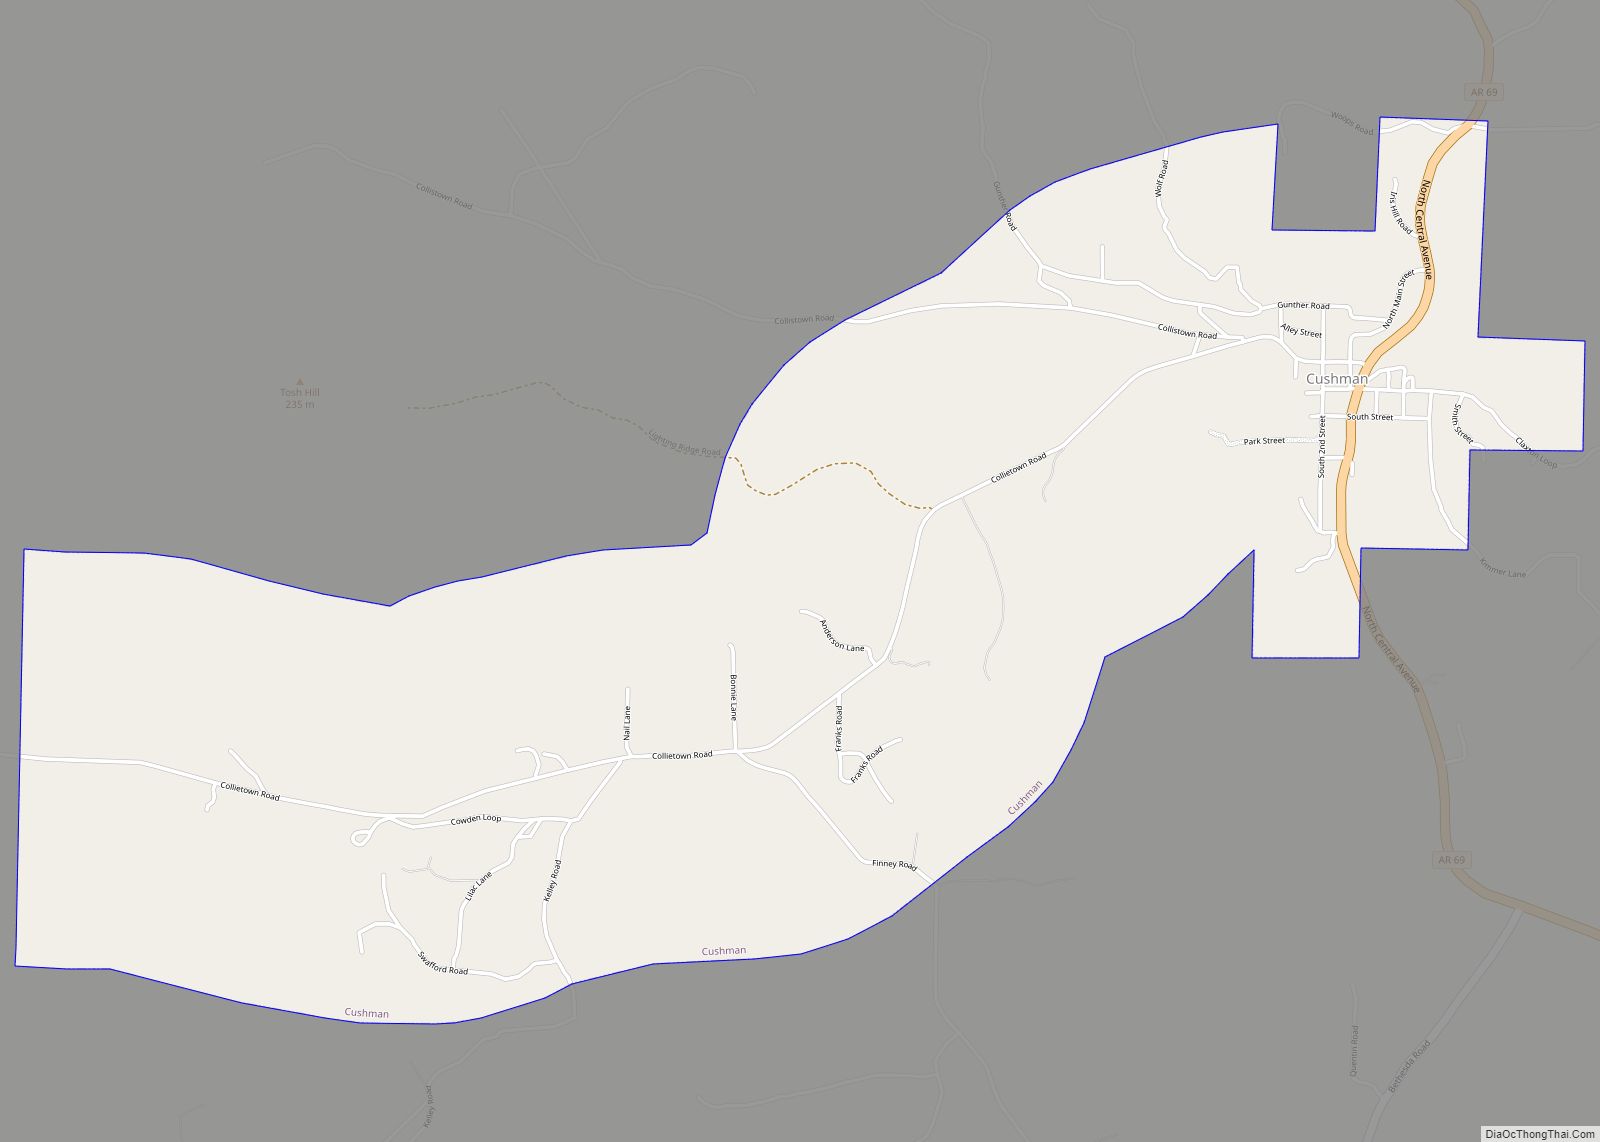 Map of Cushman city